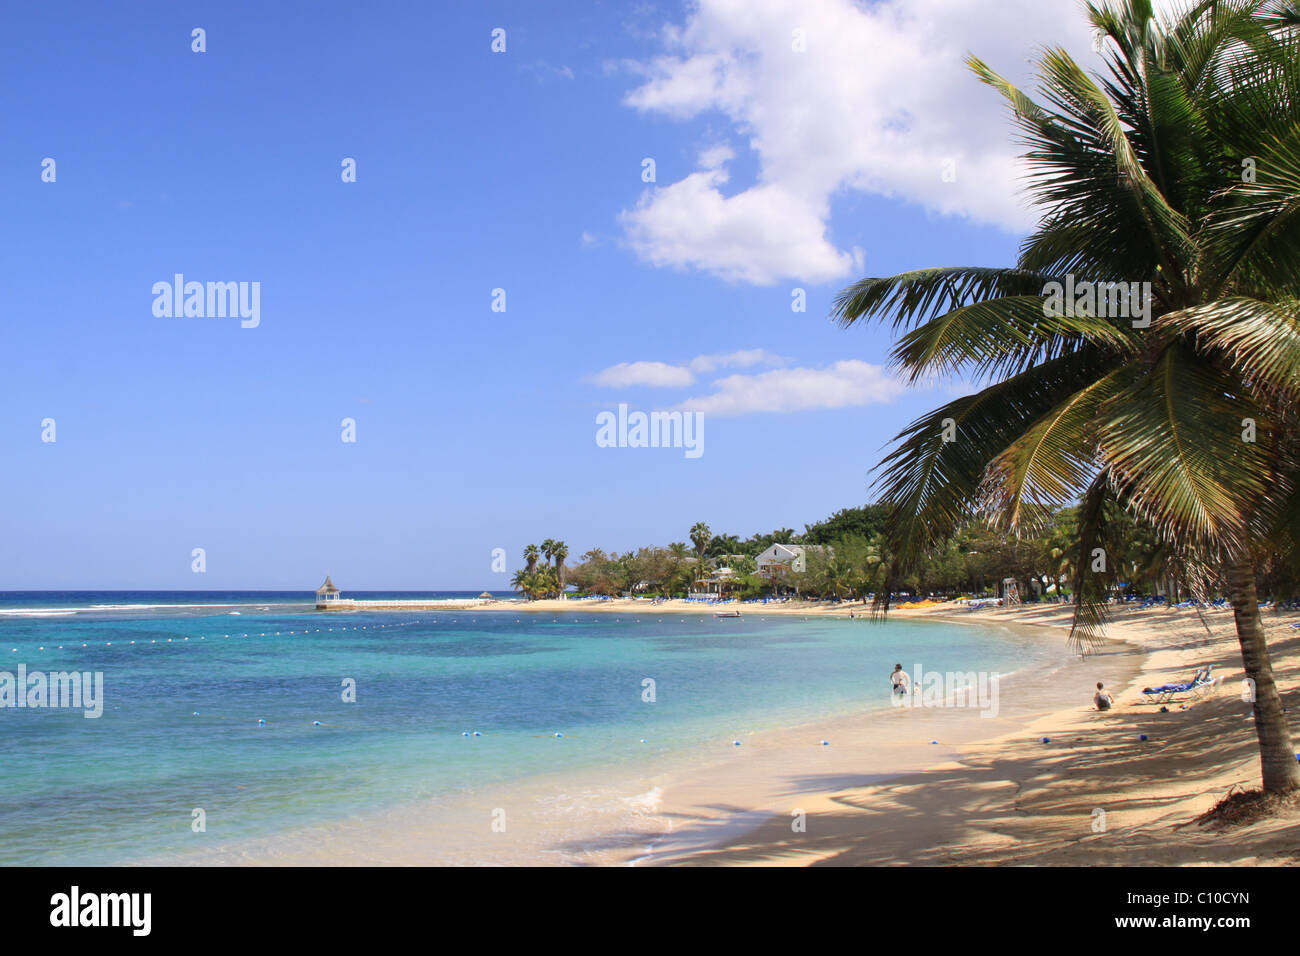 Strand, Meer, Meer, Palme, idyllische, Urlaub, Jamaika, Caribbean Stockfoto